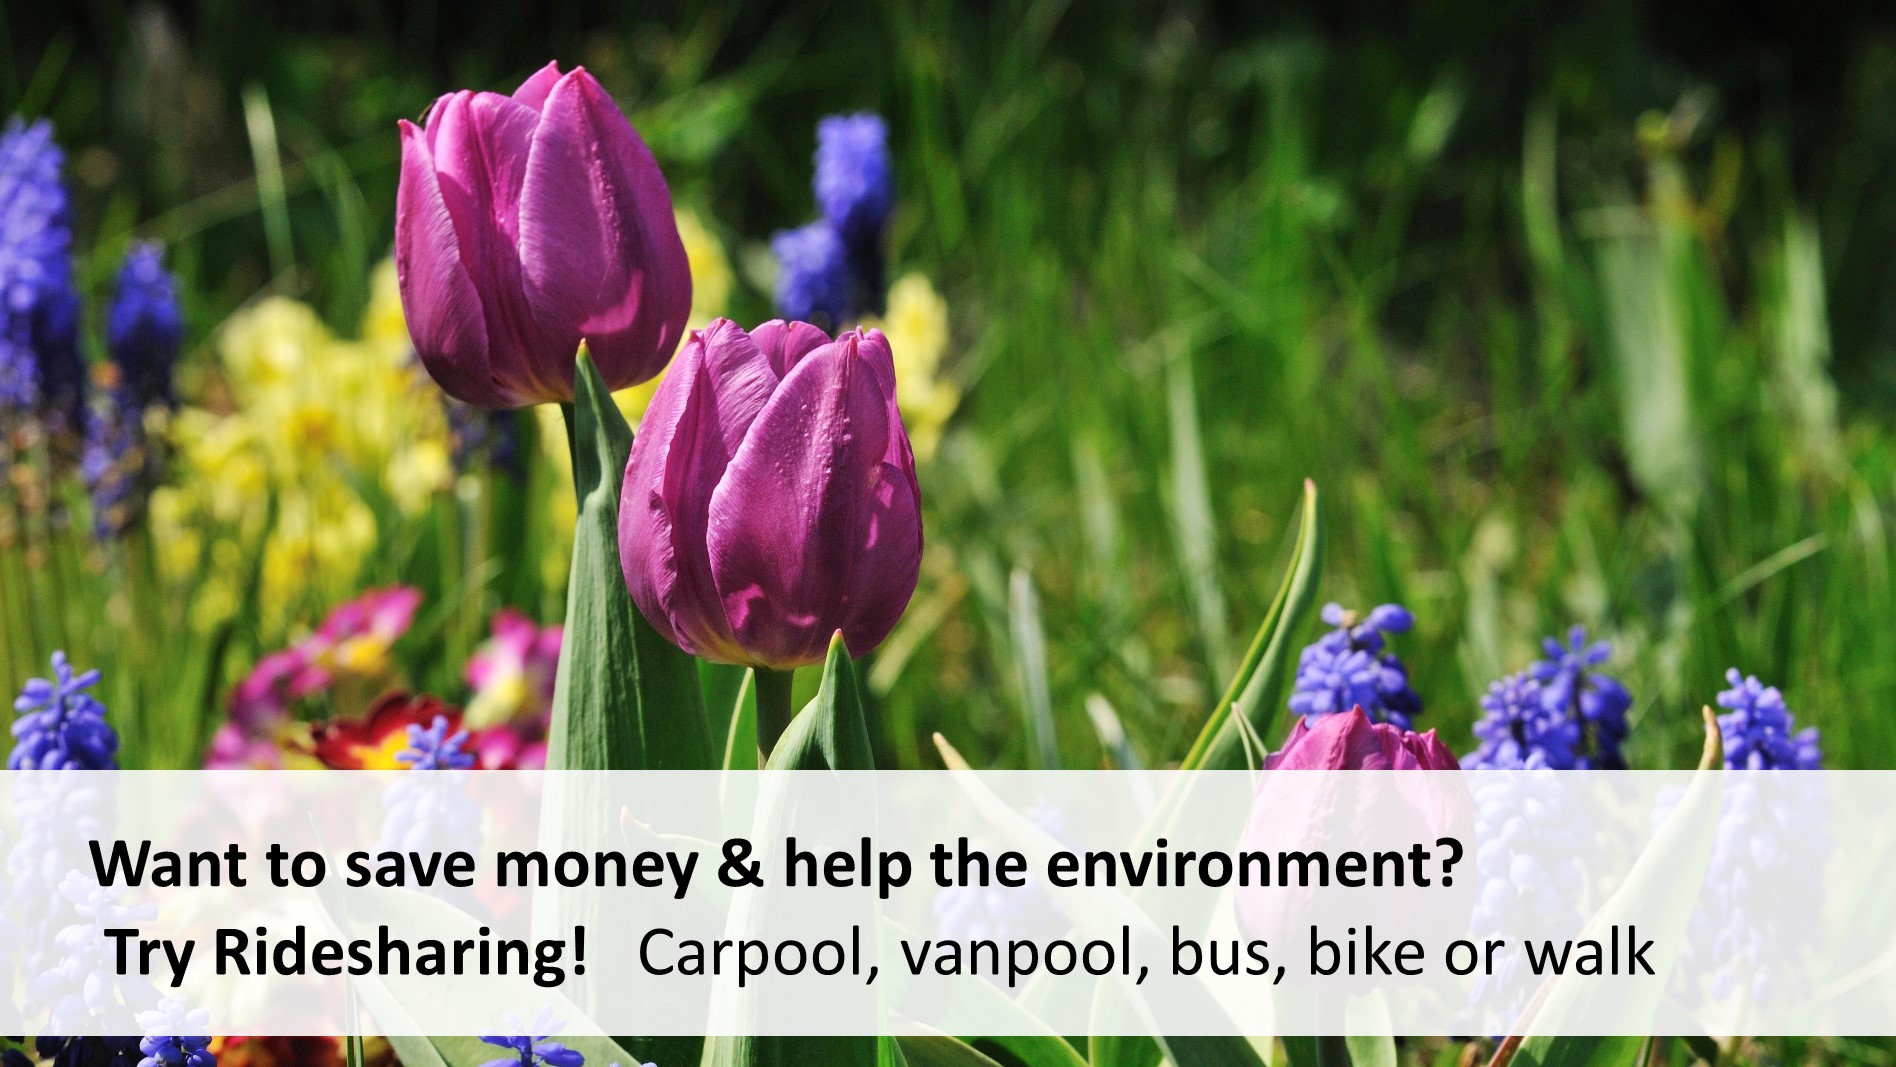 Try ridesharing. carpool, vanpool, bus, bike or walk